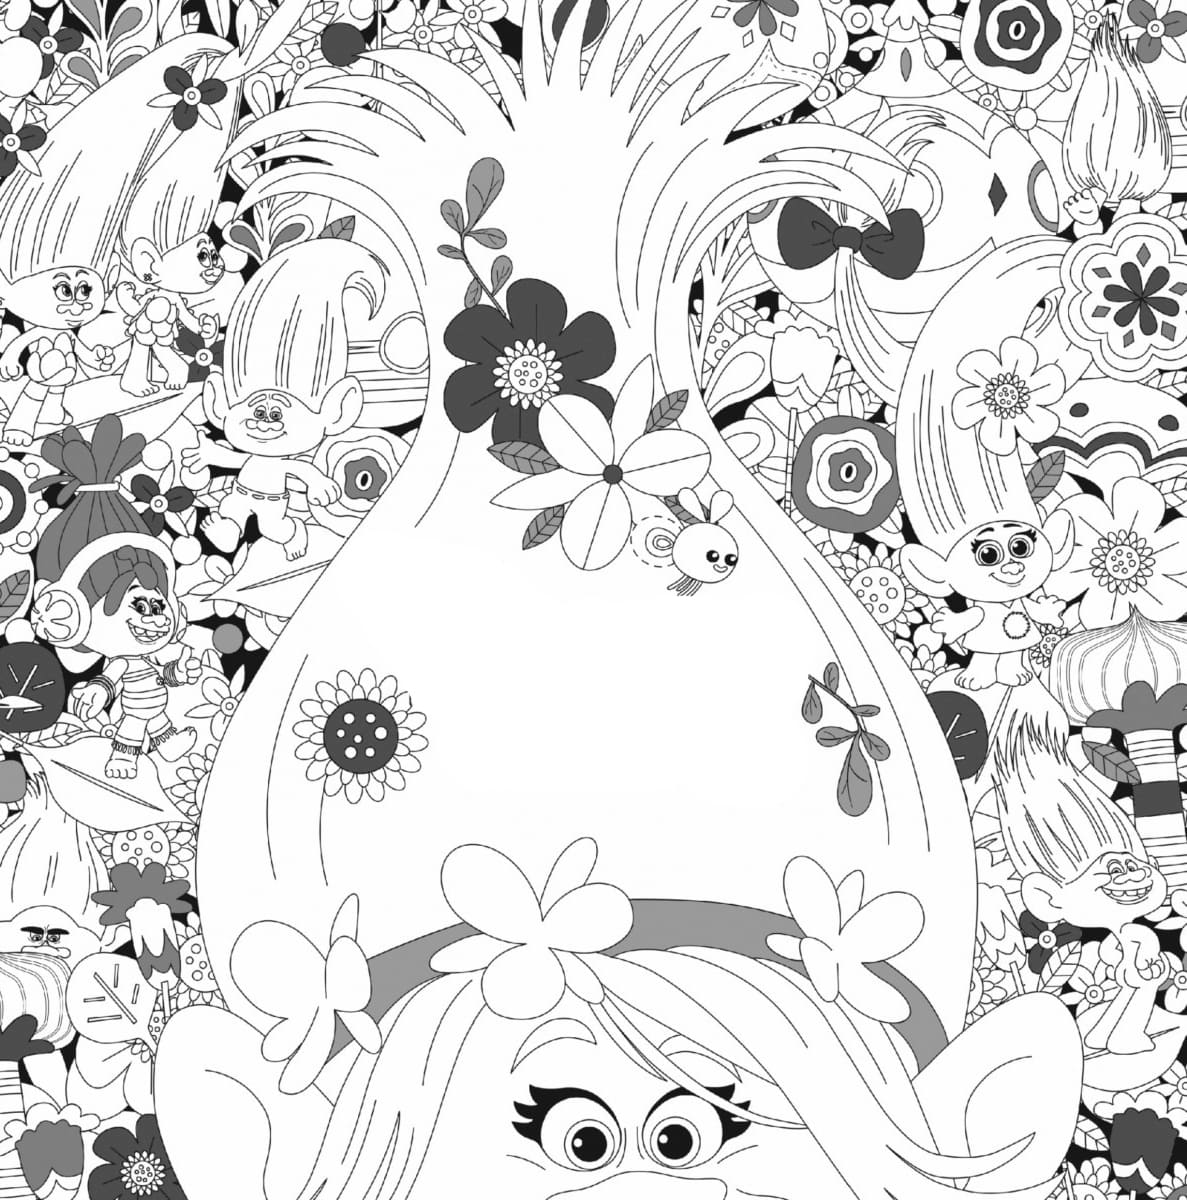 Desenhos para colorir dos Trolls  Poppy coloring page, Coloring pages,  Cartoon coloring pages